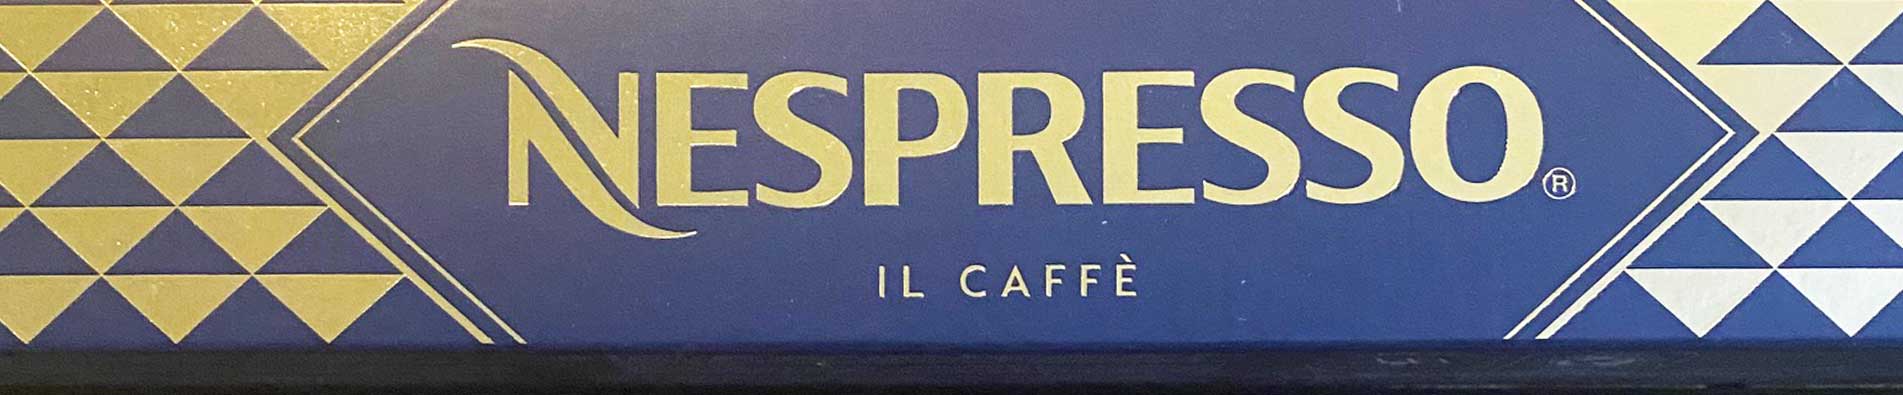 Nespresso Il Caffè coffee